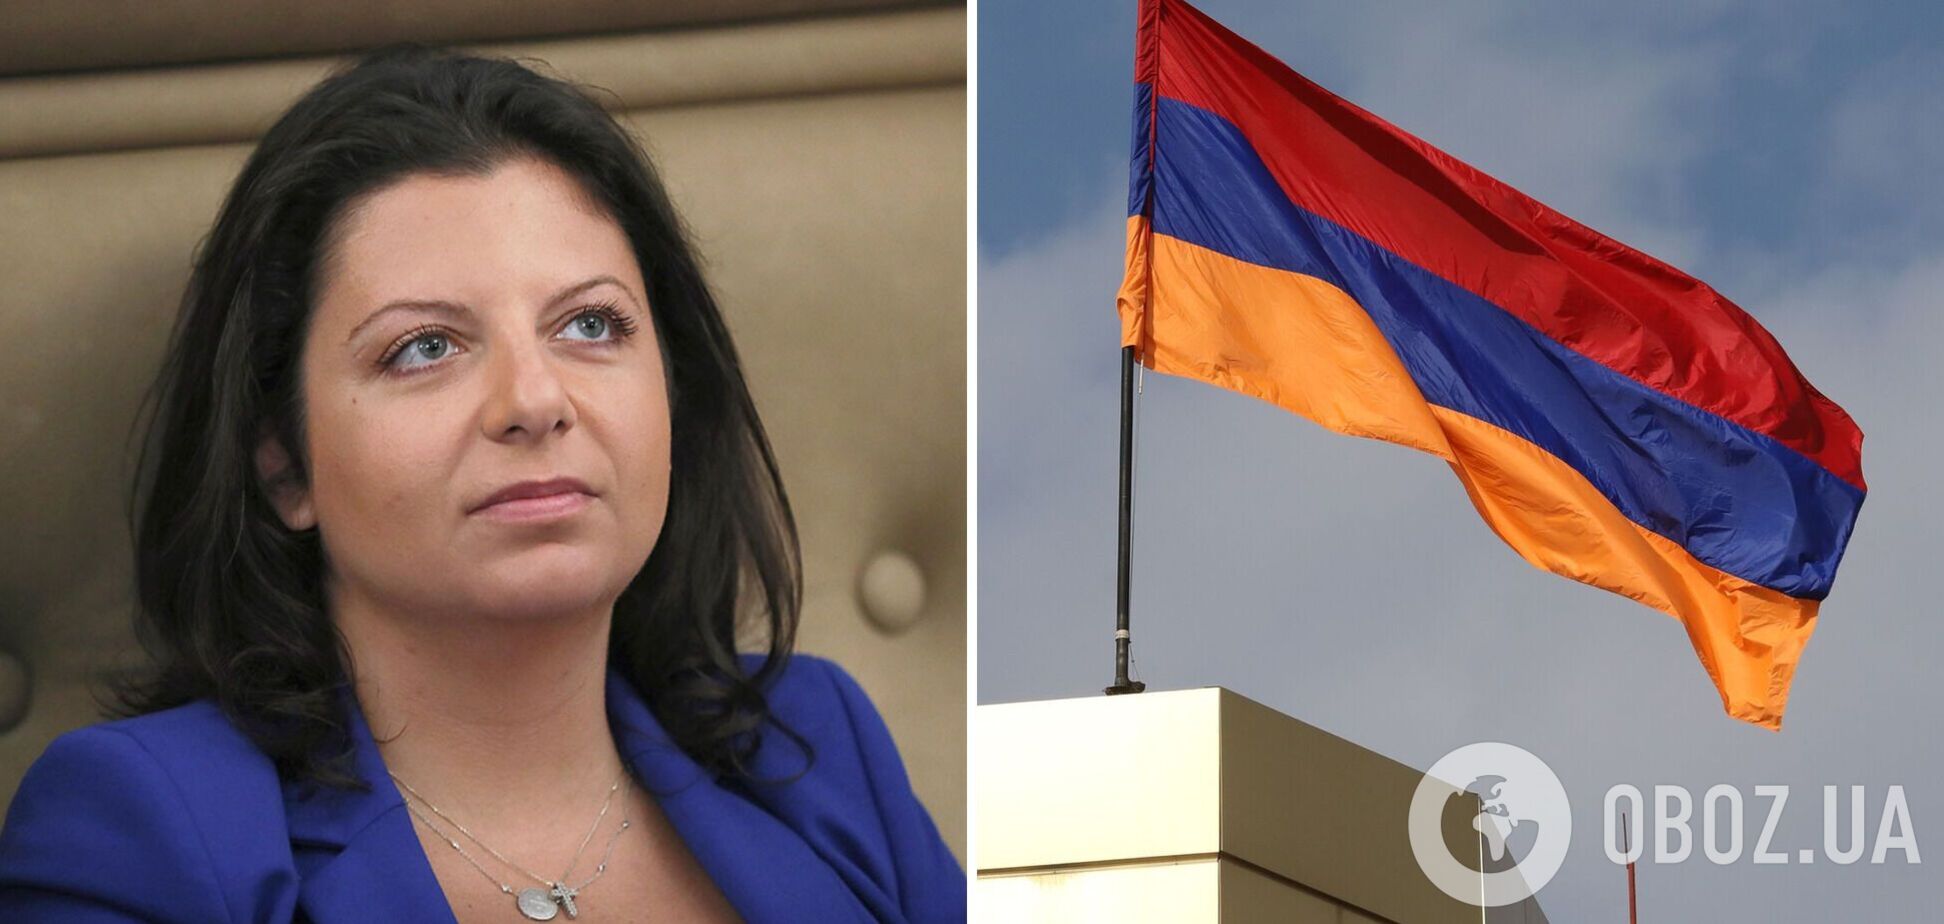 Вірменія заборонила в'їзд у країну російській пропагандистці Симоньян, яка має вірменське походження   